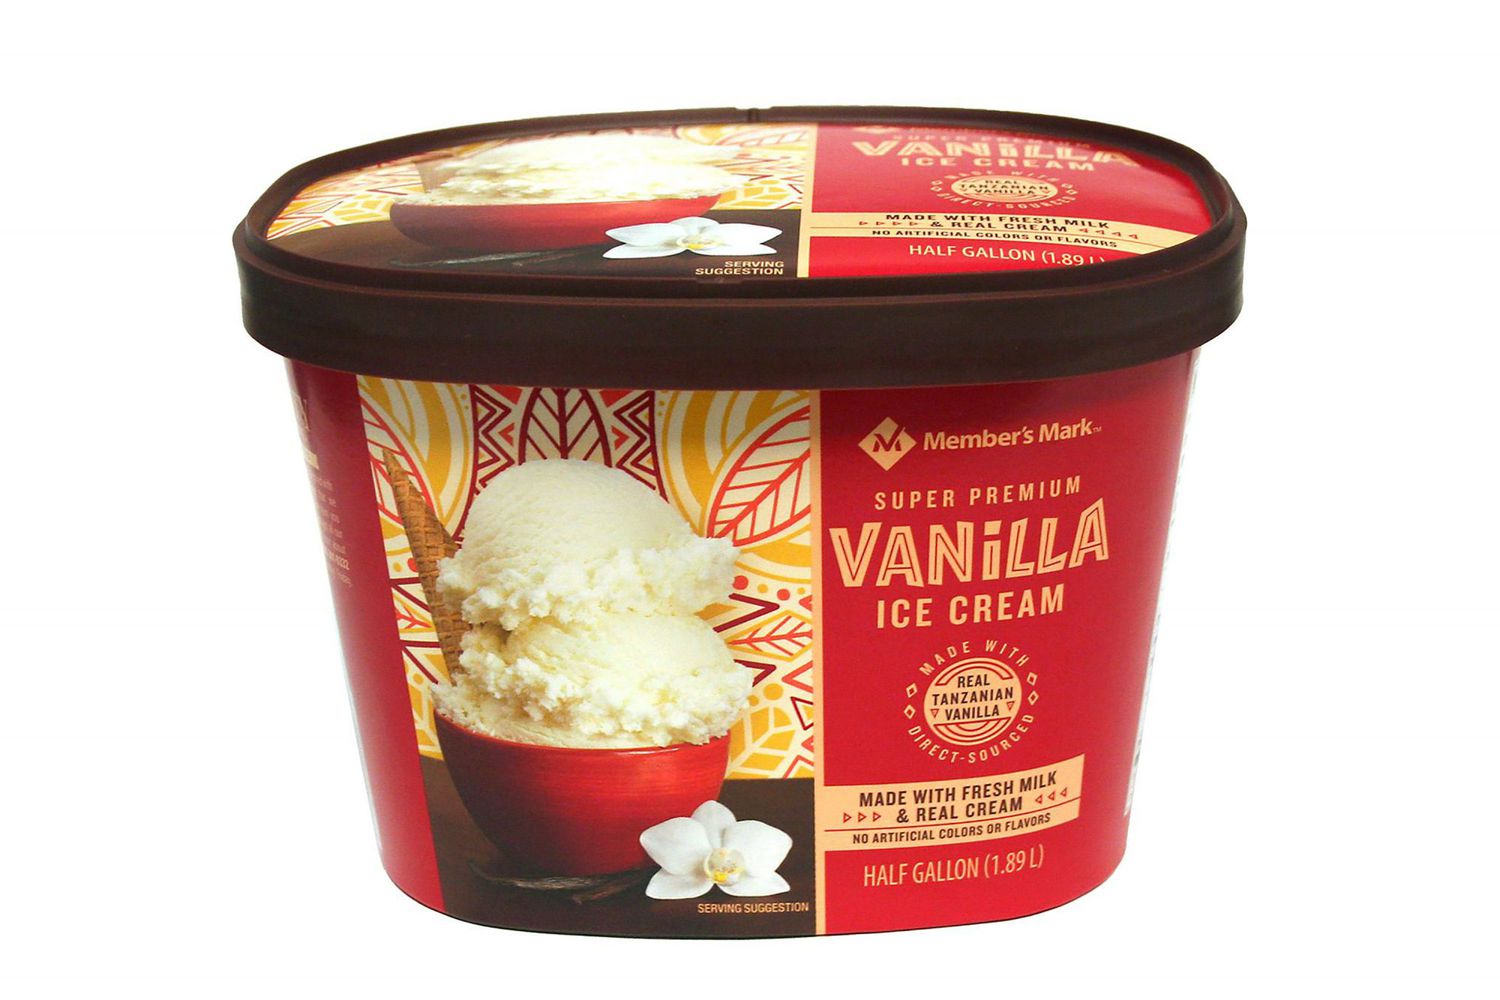 Member's Mark Super Premium Vanilla Ice Cream